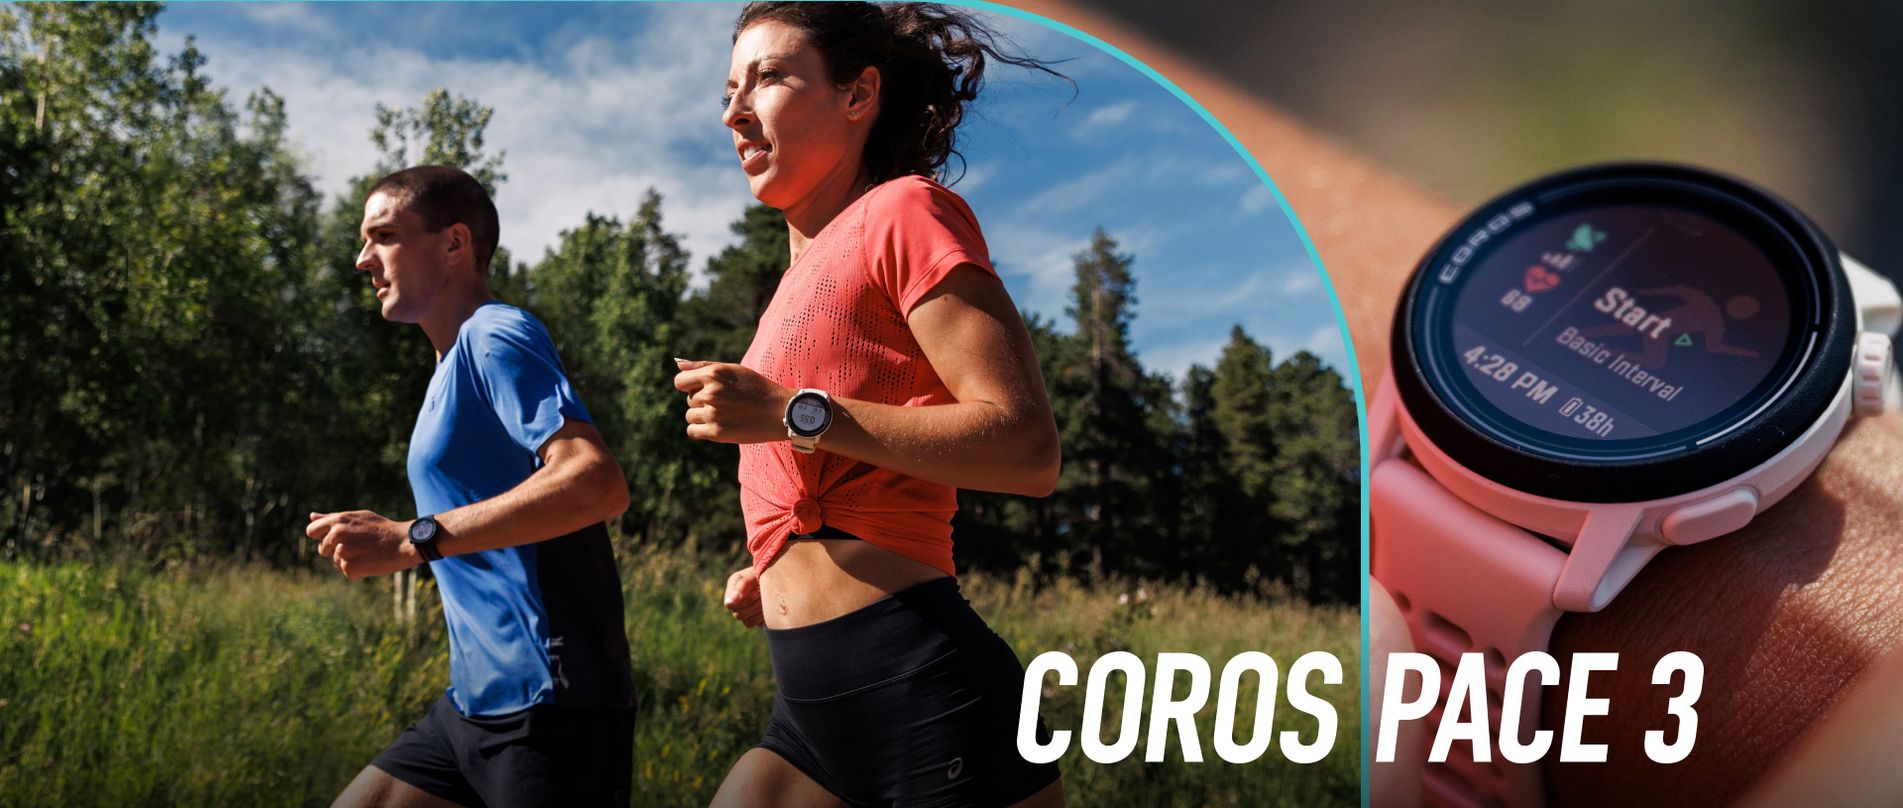 ภาพนักวิ่งชายและหญิงวิ่งออกไปข้างนอกพร้อมนาฬิกา COROS PACE 3 และภาพระยะใกล้ของนาฬิกา COROS PACE 3 สีขาวในหน้าเริ่มต้นกิจกรรม